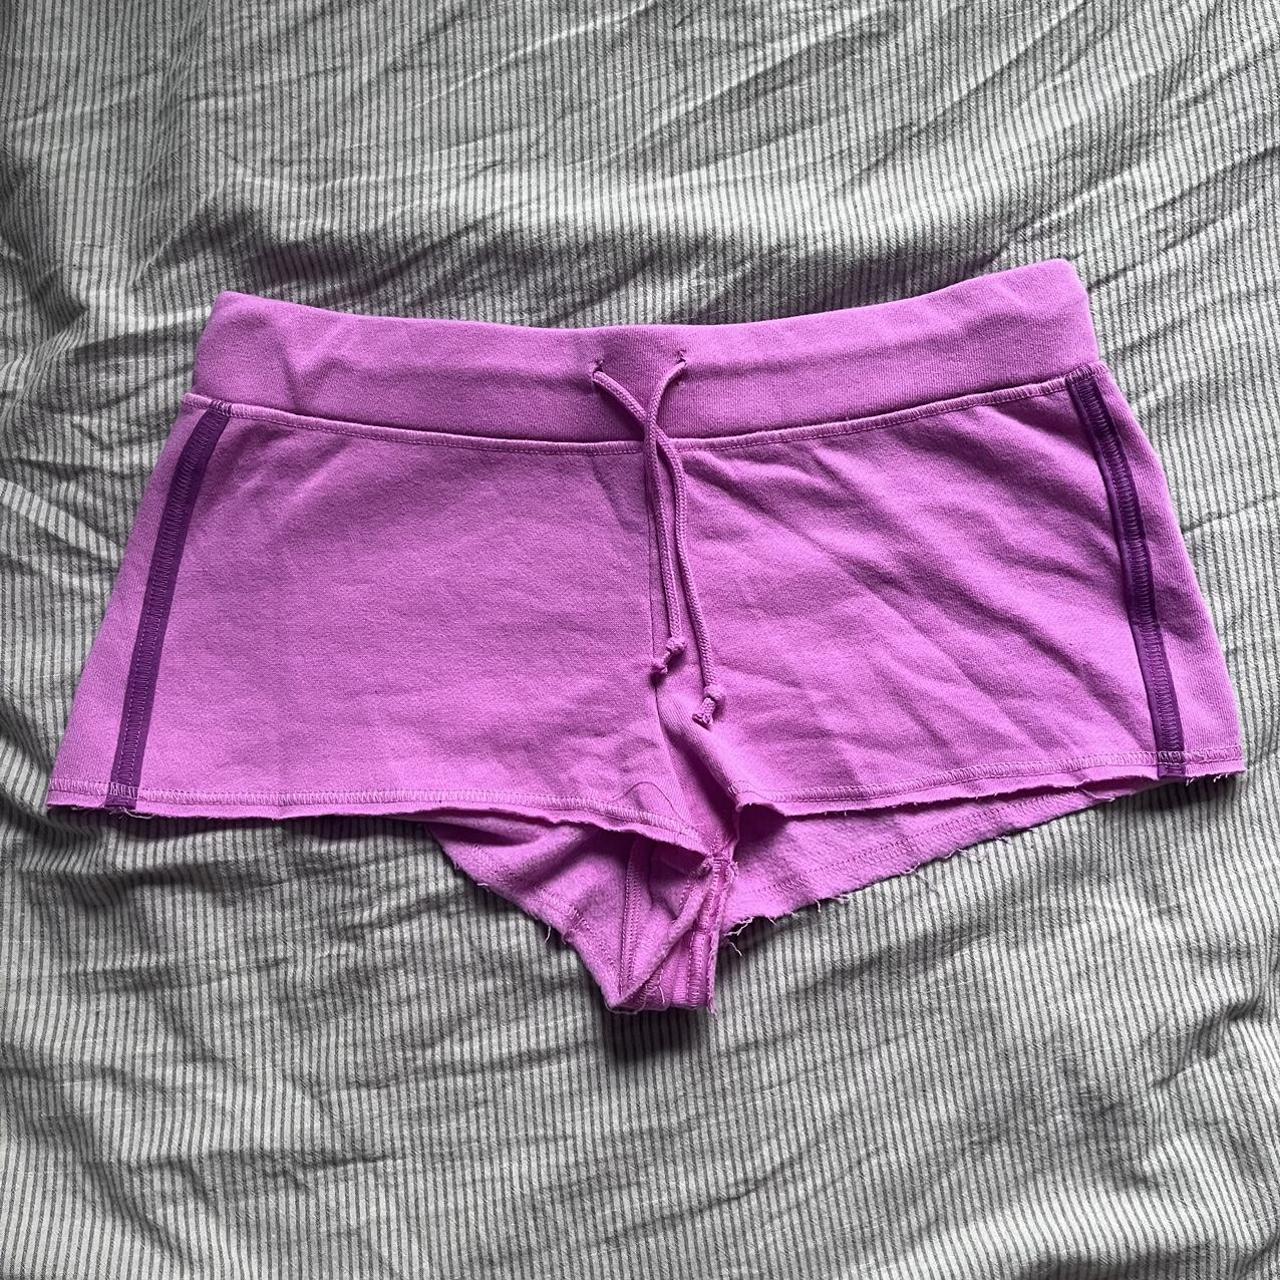 PacSun Women's Pink Shorts | Depop